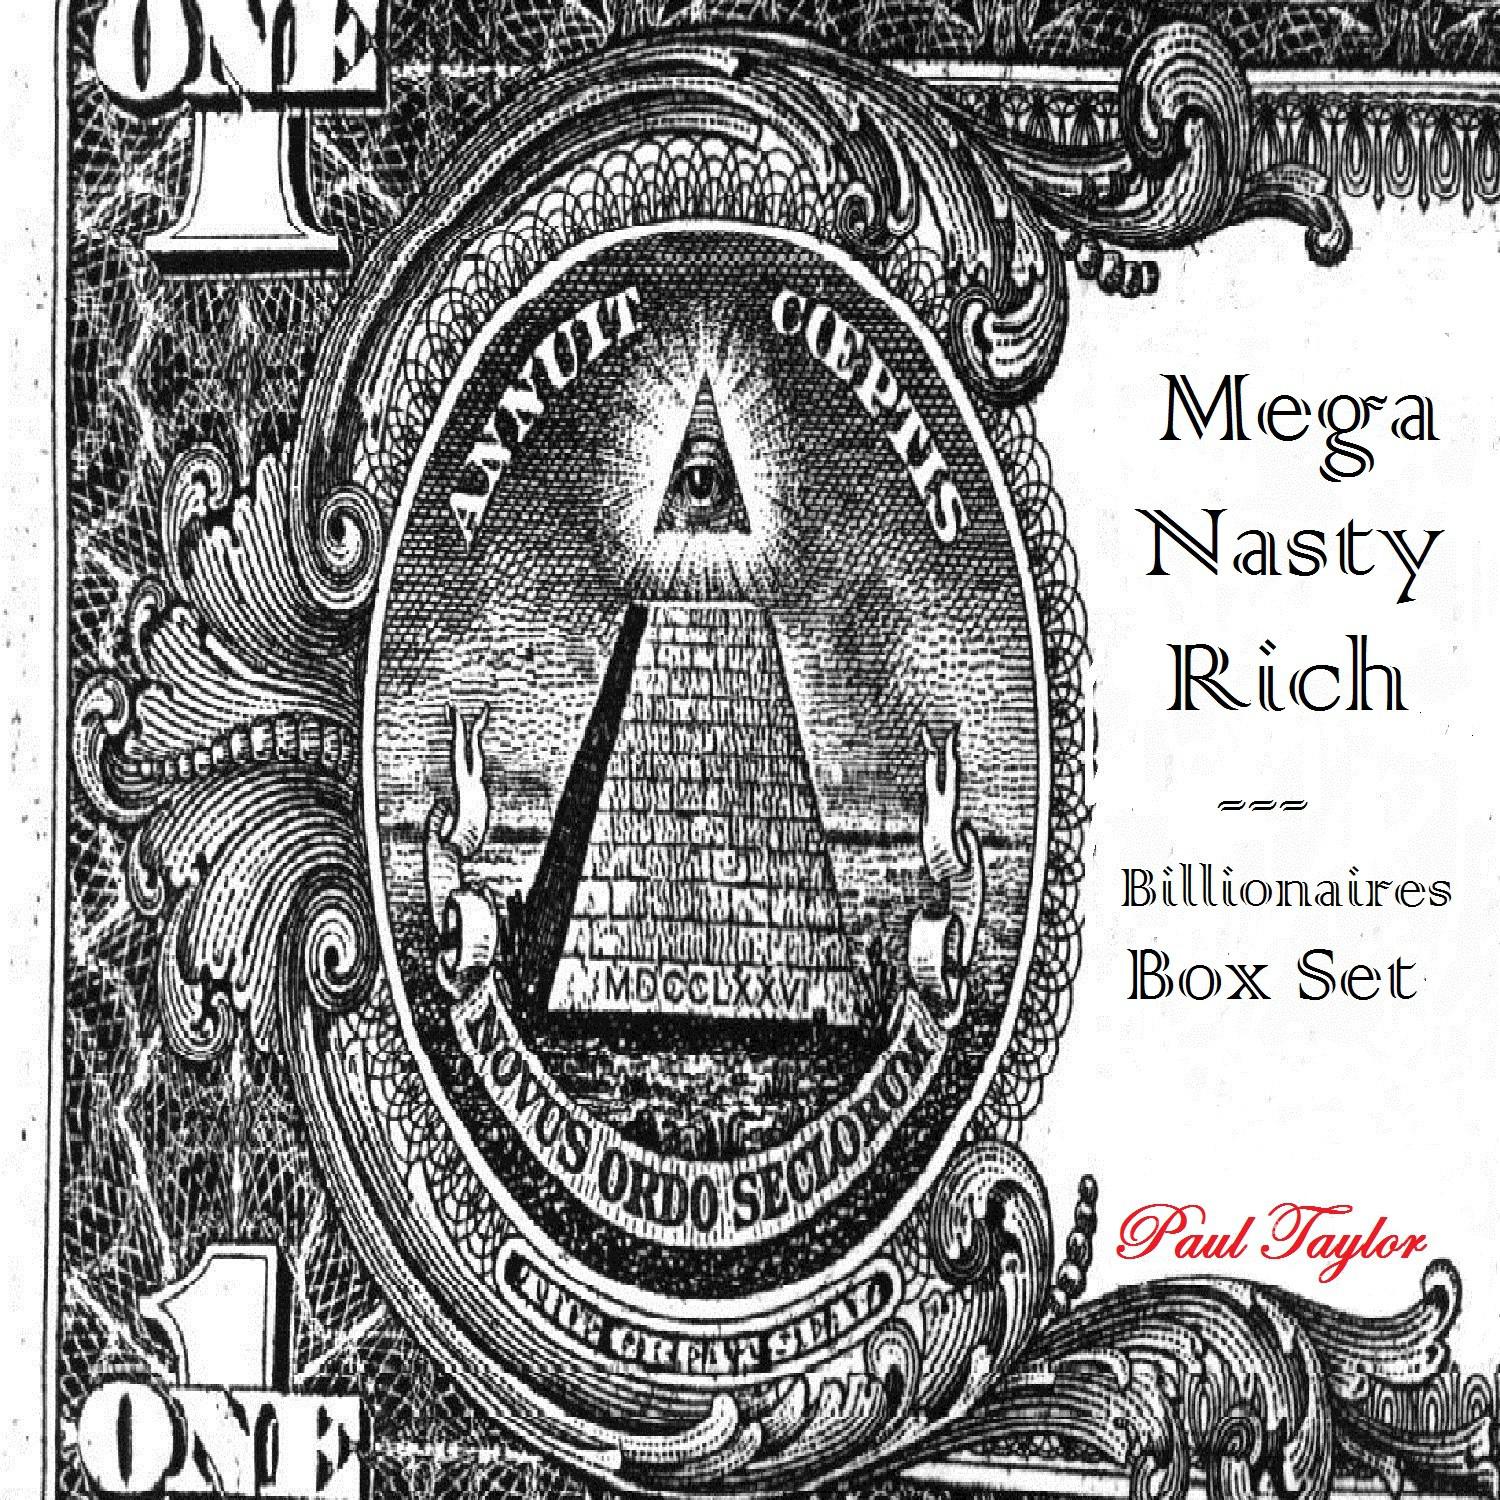 Mega Nasty Rich: Billionaires Box Set专辑